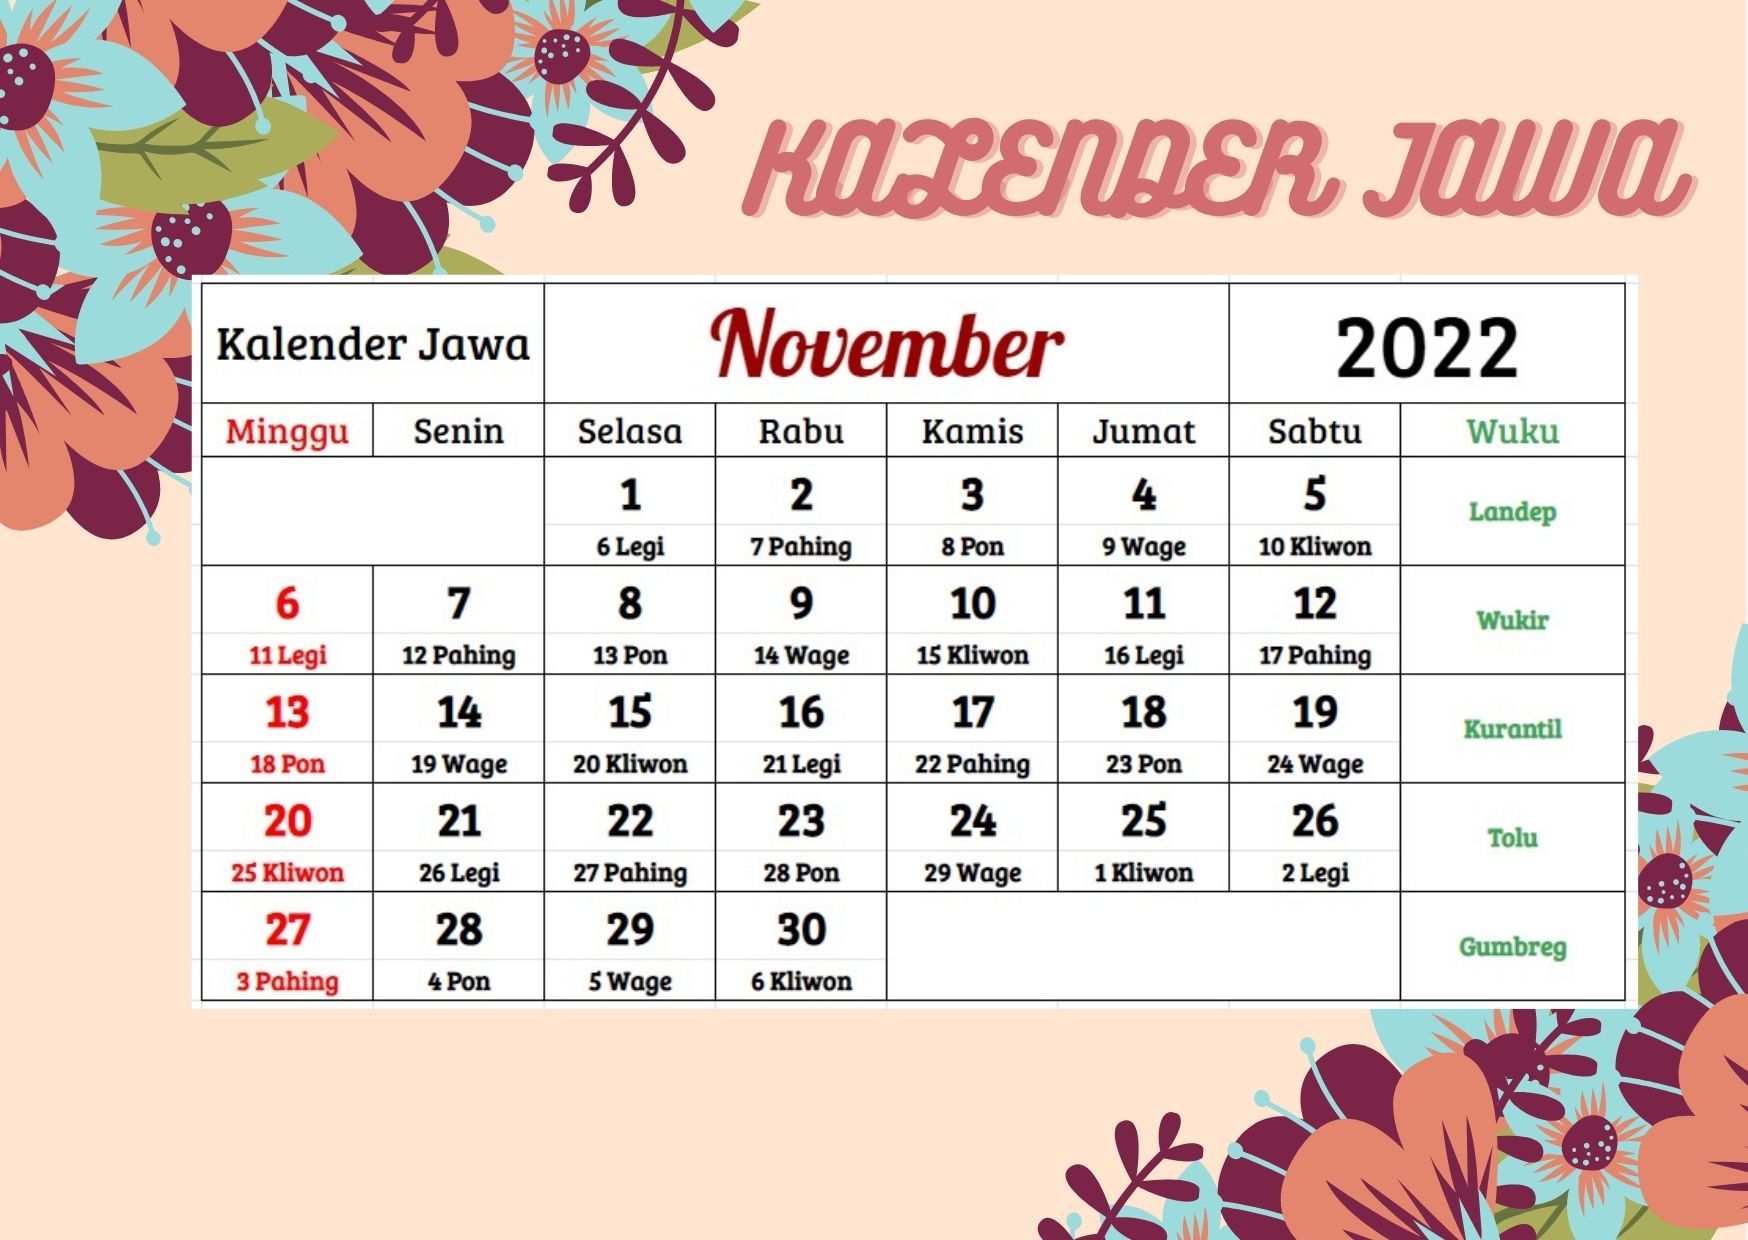 Kalender Jawa 2022 Lengkap, Bantu Cari Hari Baik Berdasarkan Weton